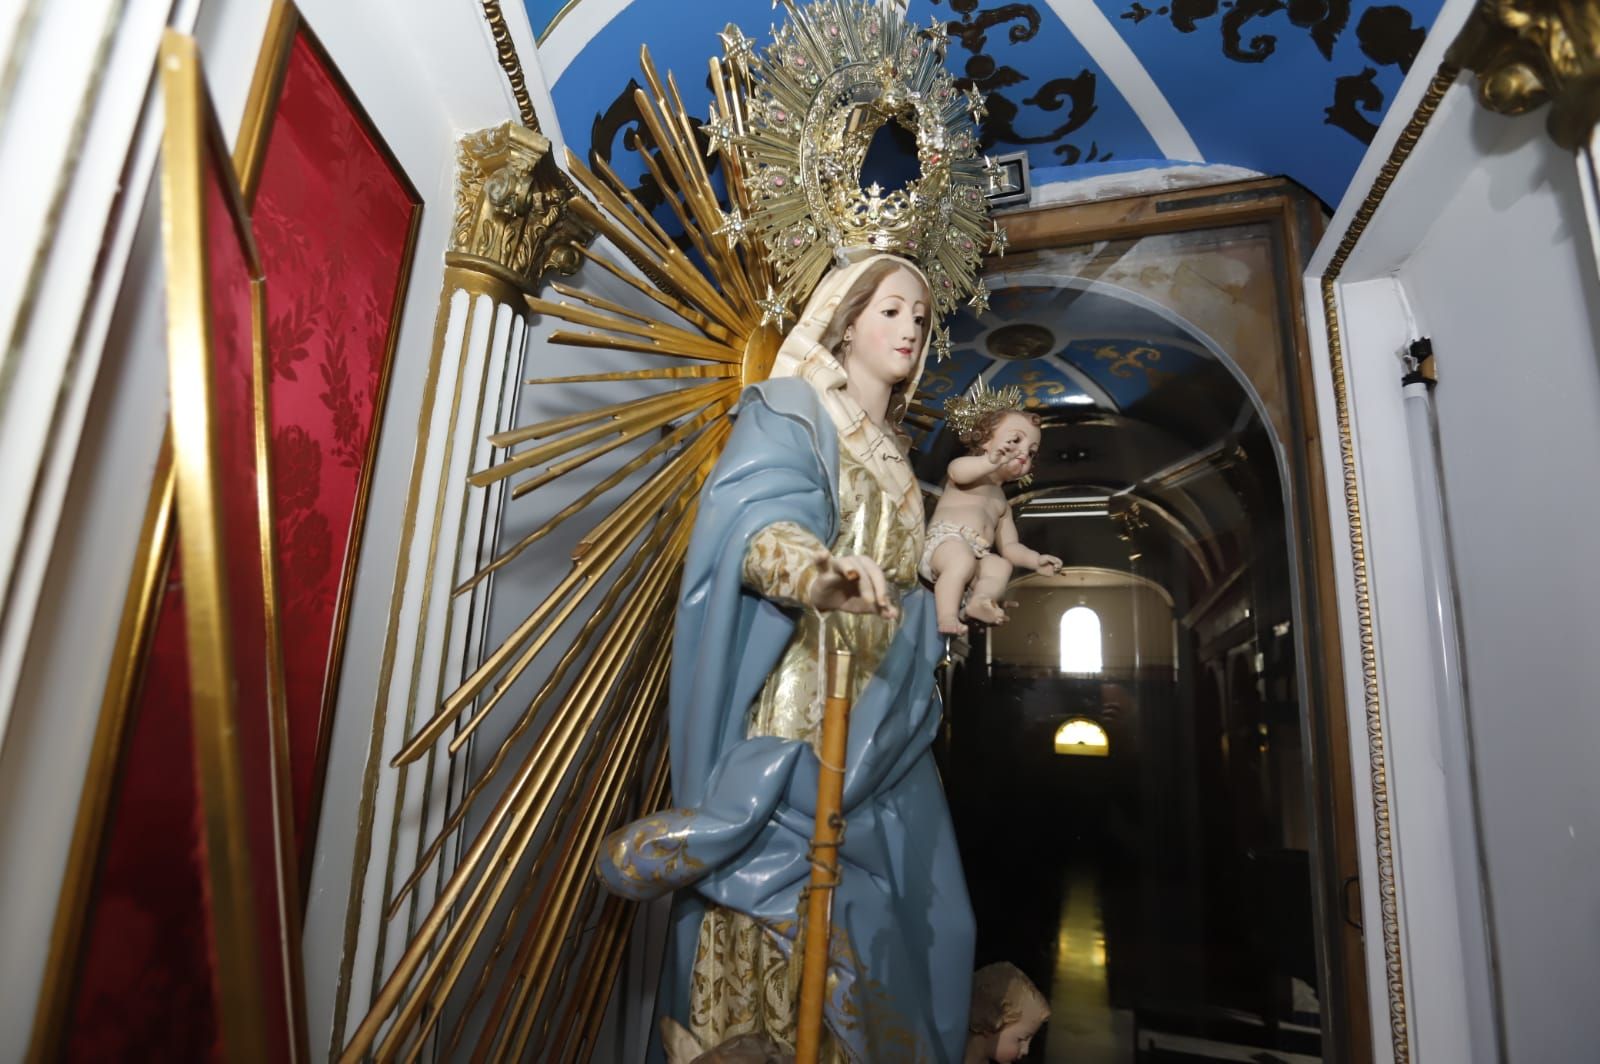 Roban en la parroquia Nuestra Señora del Rosario de Fontanars dels Alforins